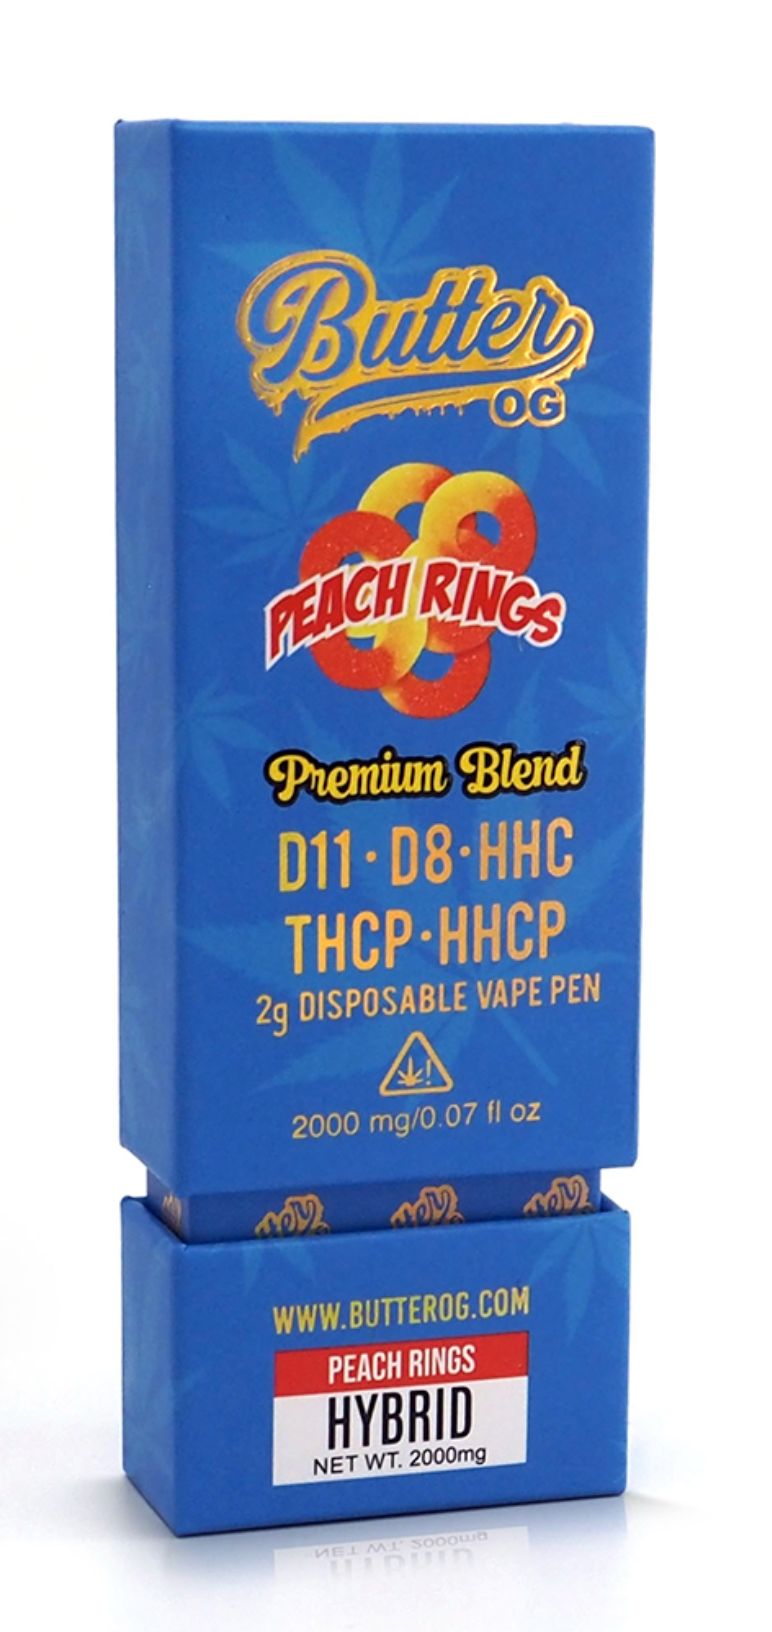 Butter OG Premium Blend D11, D8, HHC, THCP, HHCP 2g Disposable Vape - Peach Rings (Hybrid) - Headshop.com